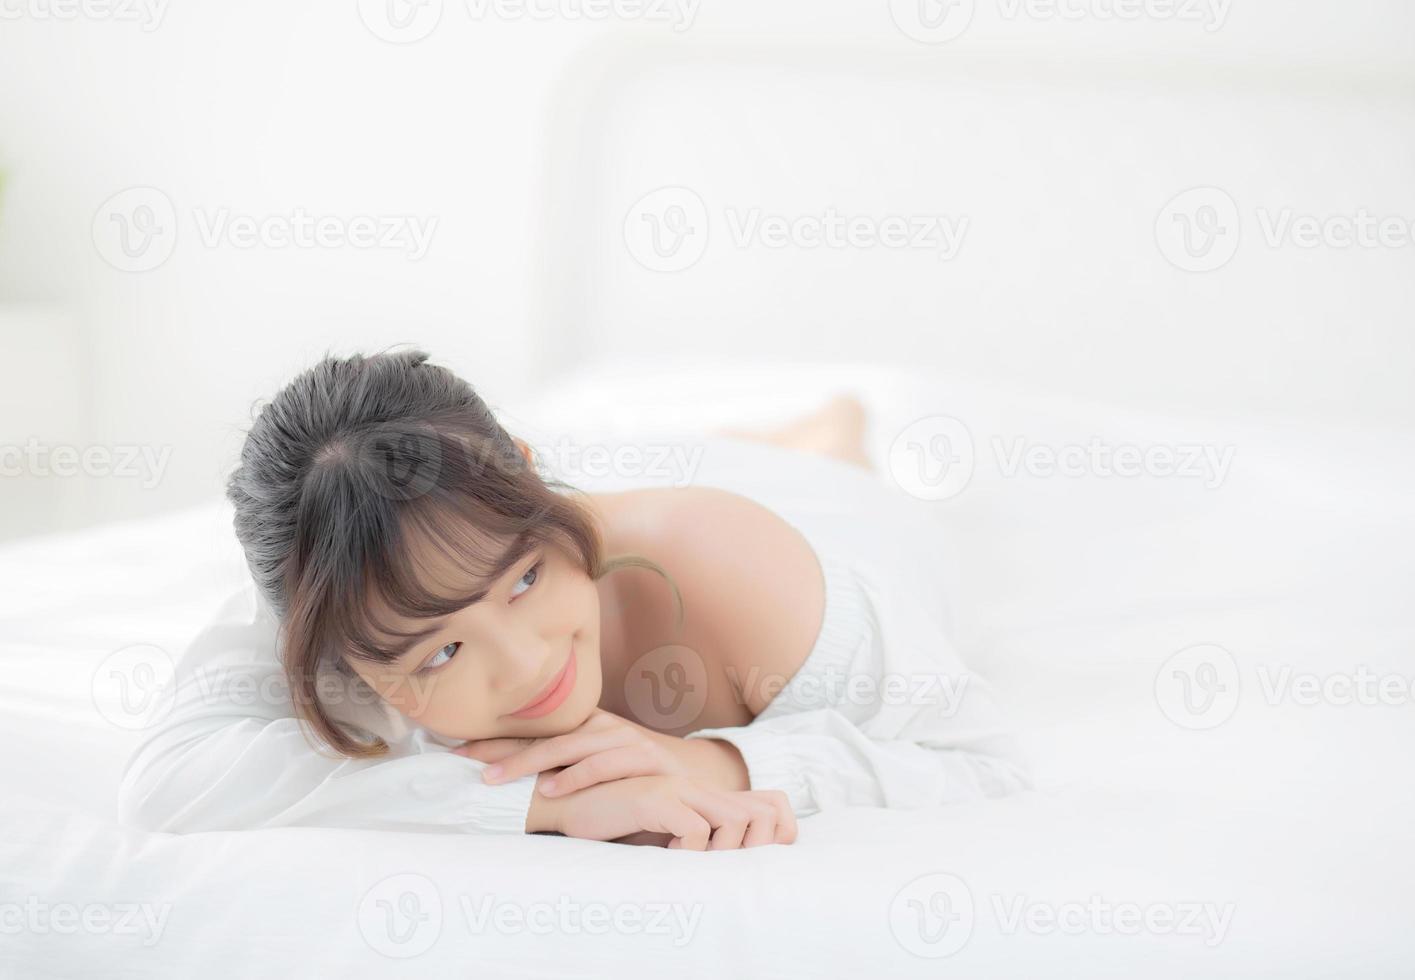 bel ritratto giovane donna asiatica sdraiata e sorriso mentre si sveglia con l'alba al mattino, bellezza ragazza carina felice e allegra che riposa sul letto in camera da letto, stile di vita e relax concetto. foto